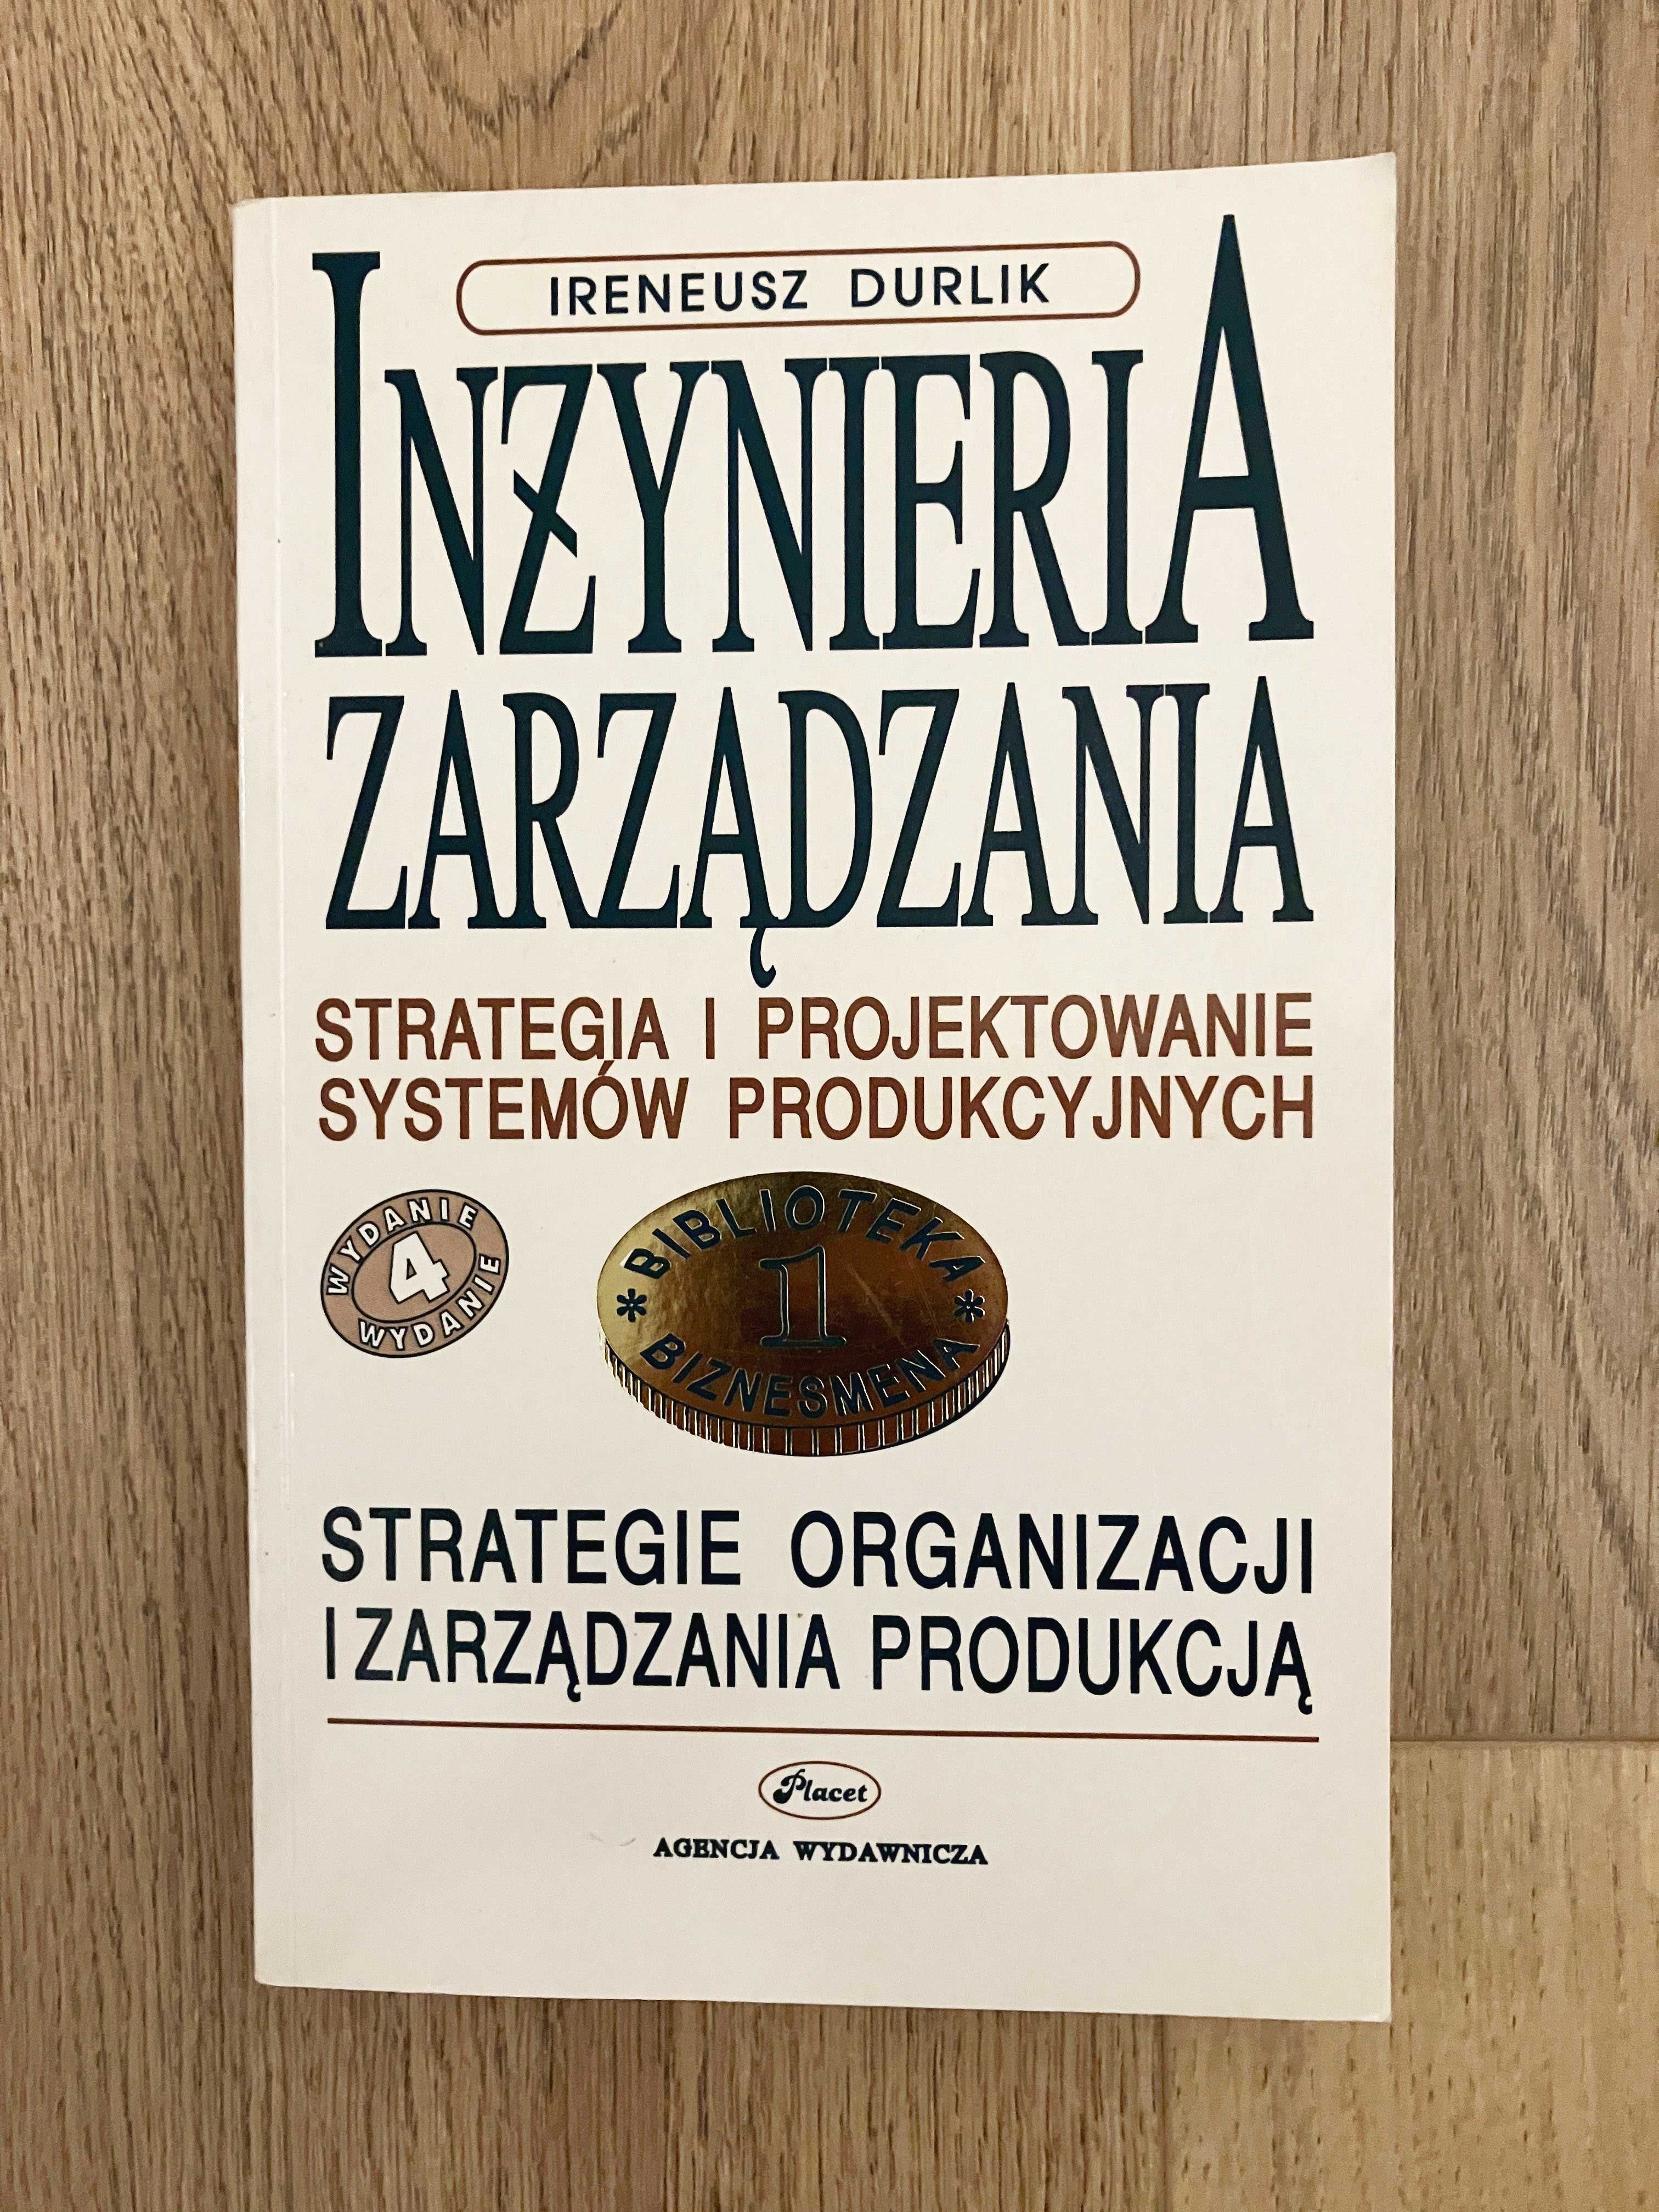 Inżynieria zarządzania - Strategia i projektowanie - Ireneusz Durlik